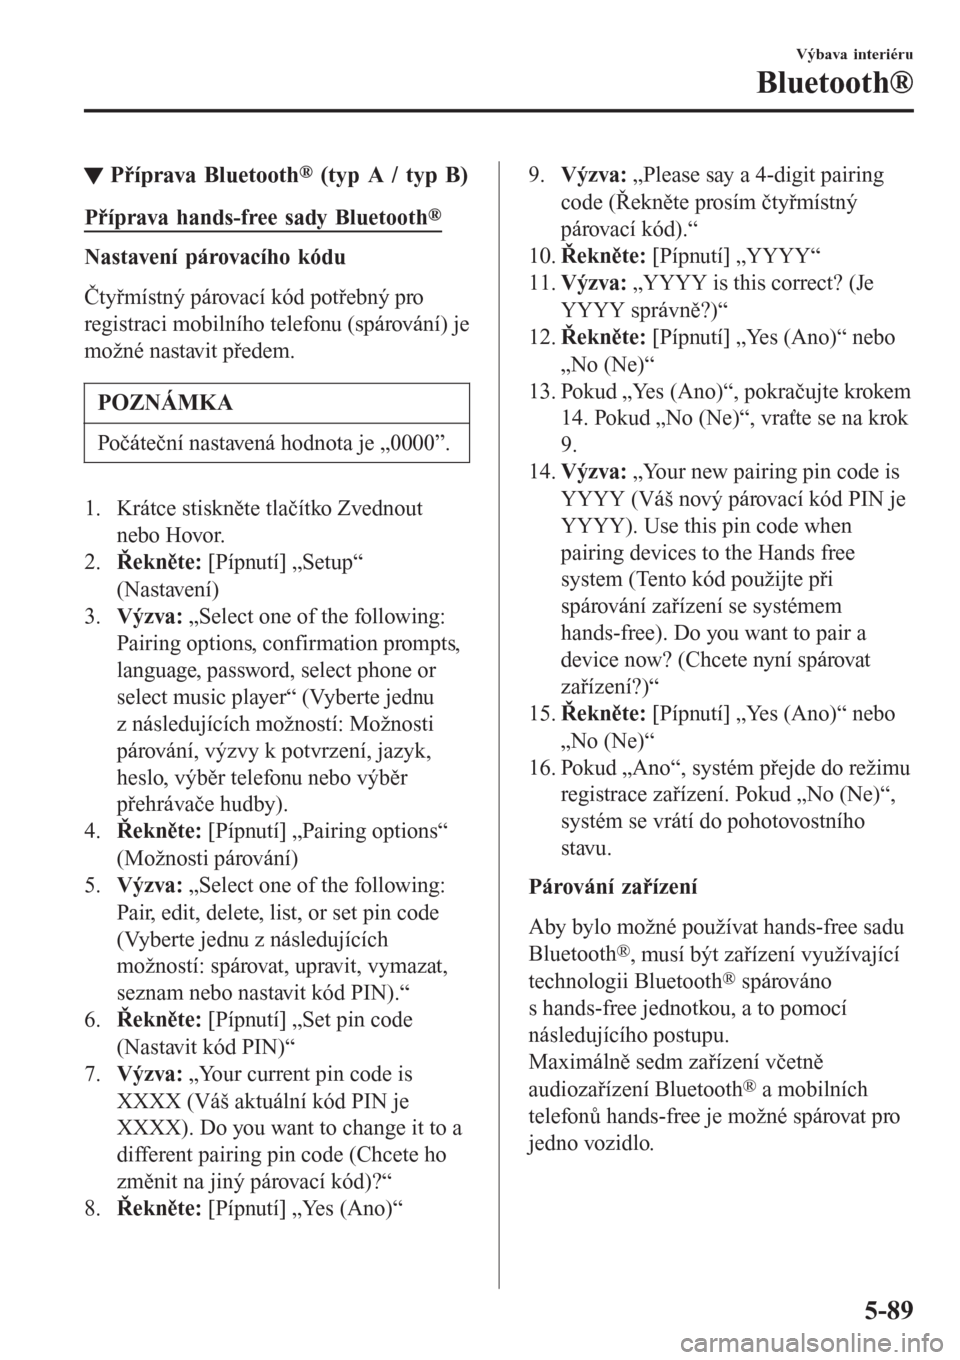 MAZDA MODEL CX-3 2016  Návod k obsluze (in Czech) tPříprava Bluetooth® (typ A / typ B)
Příprava hands-free sady Bluetooth®
Nastavení párovacího kódu
Čtyřmístný párovací kód potřebný pro
registraci mobilního telefonu (spárování)